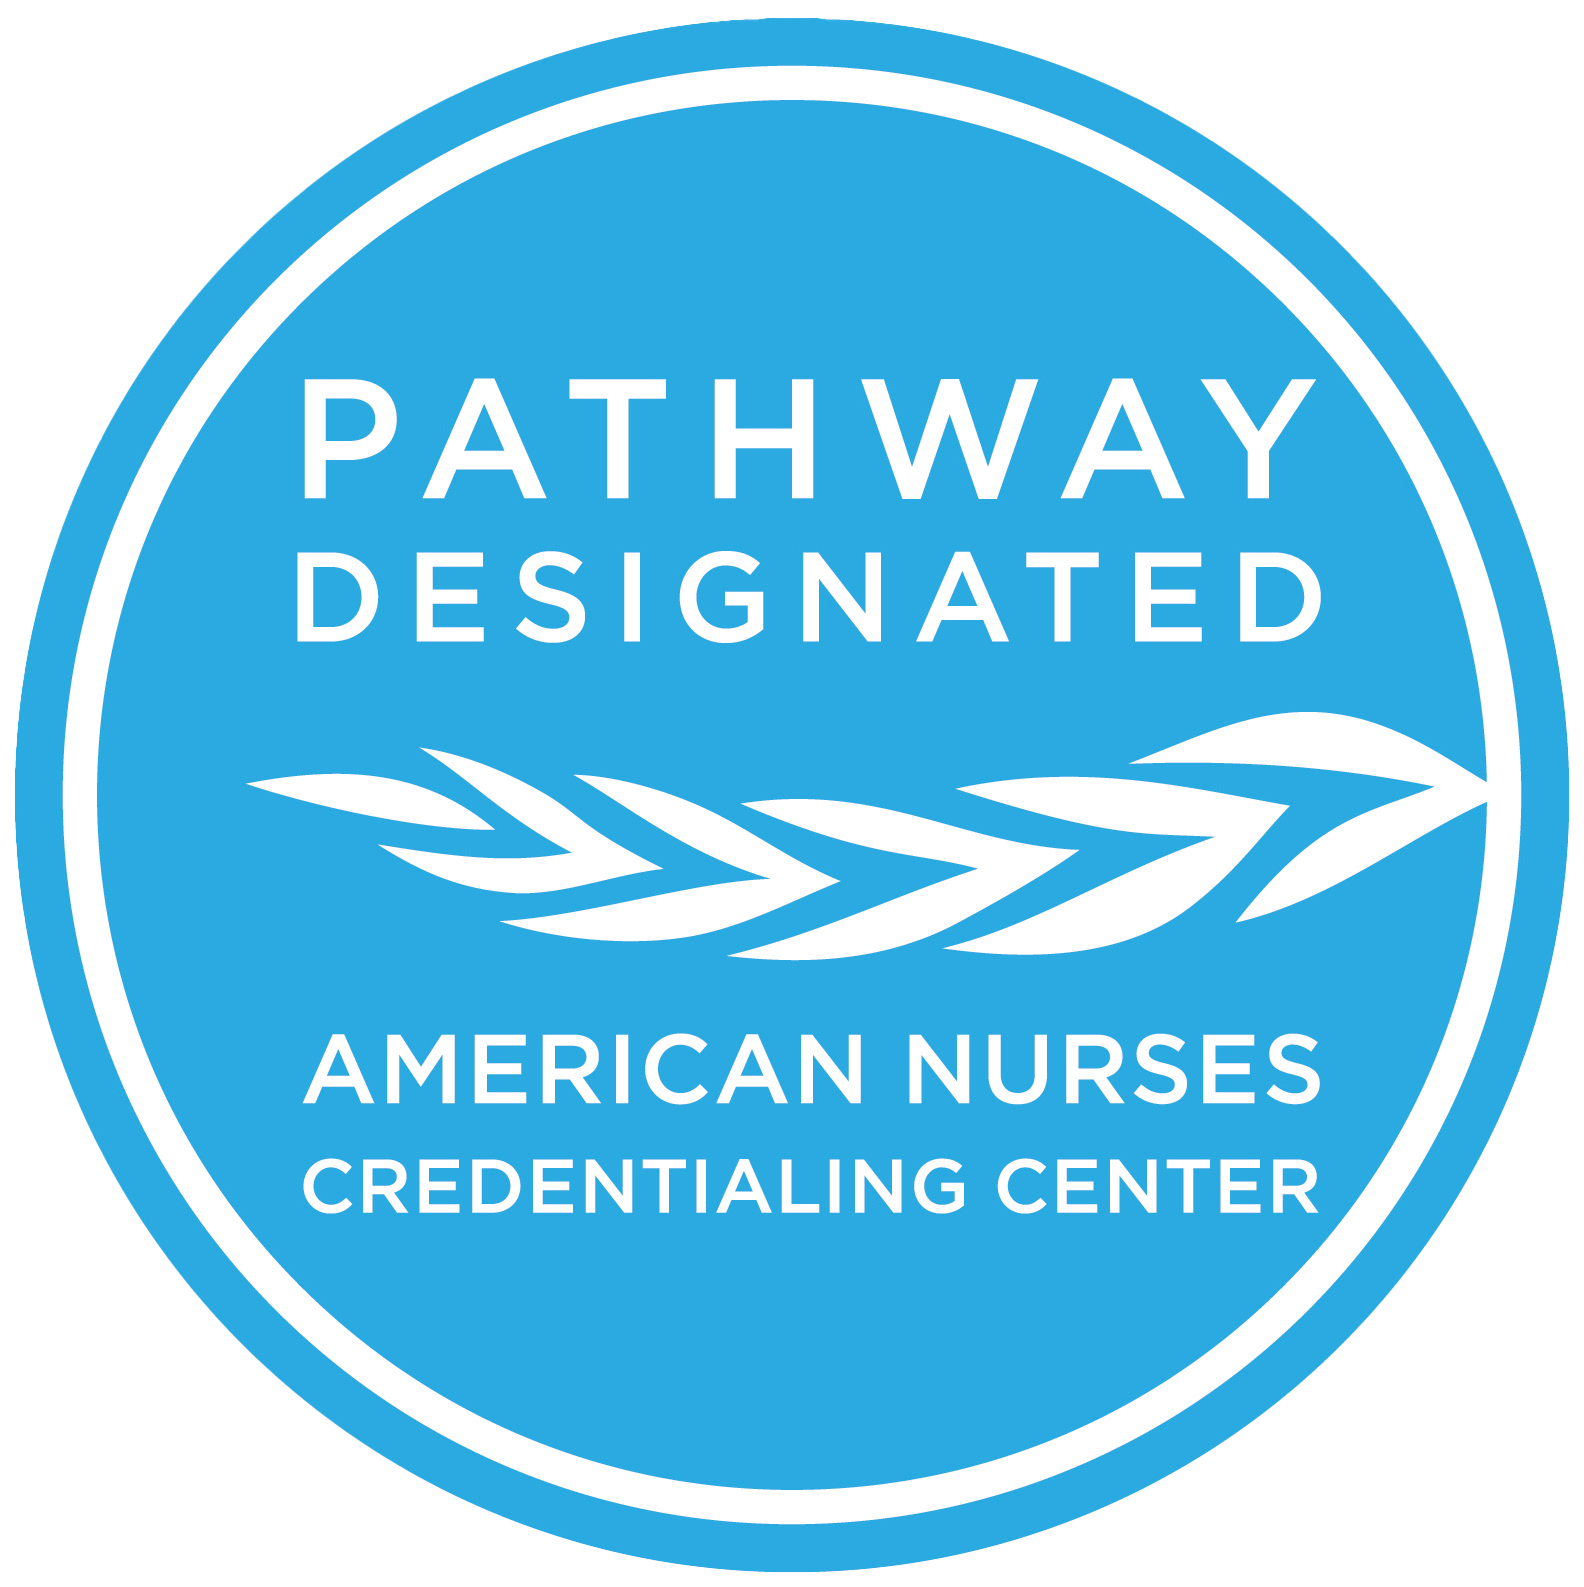 pathway designated american nurses credentialing center logo